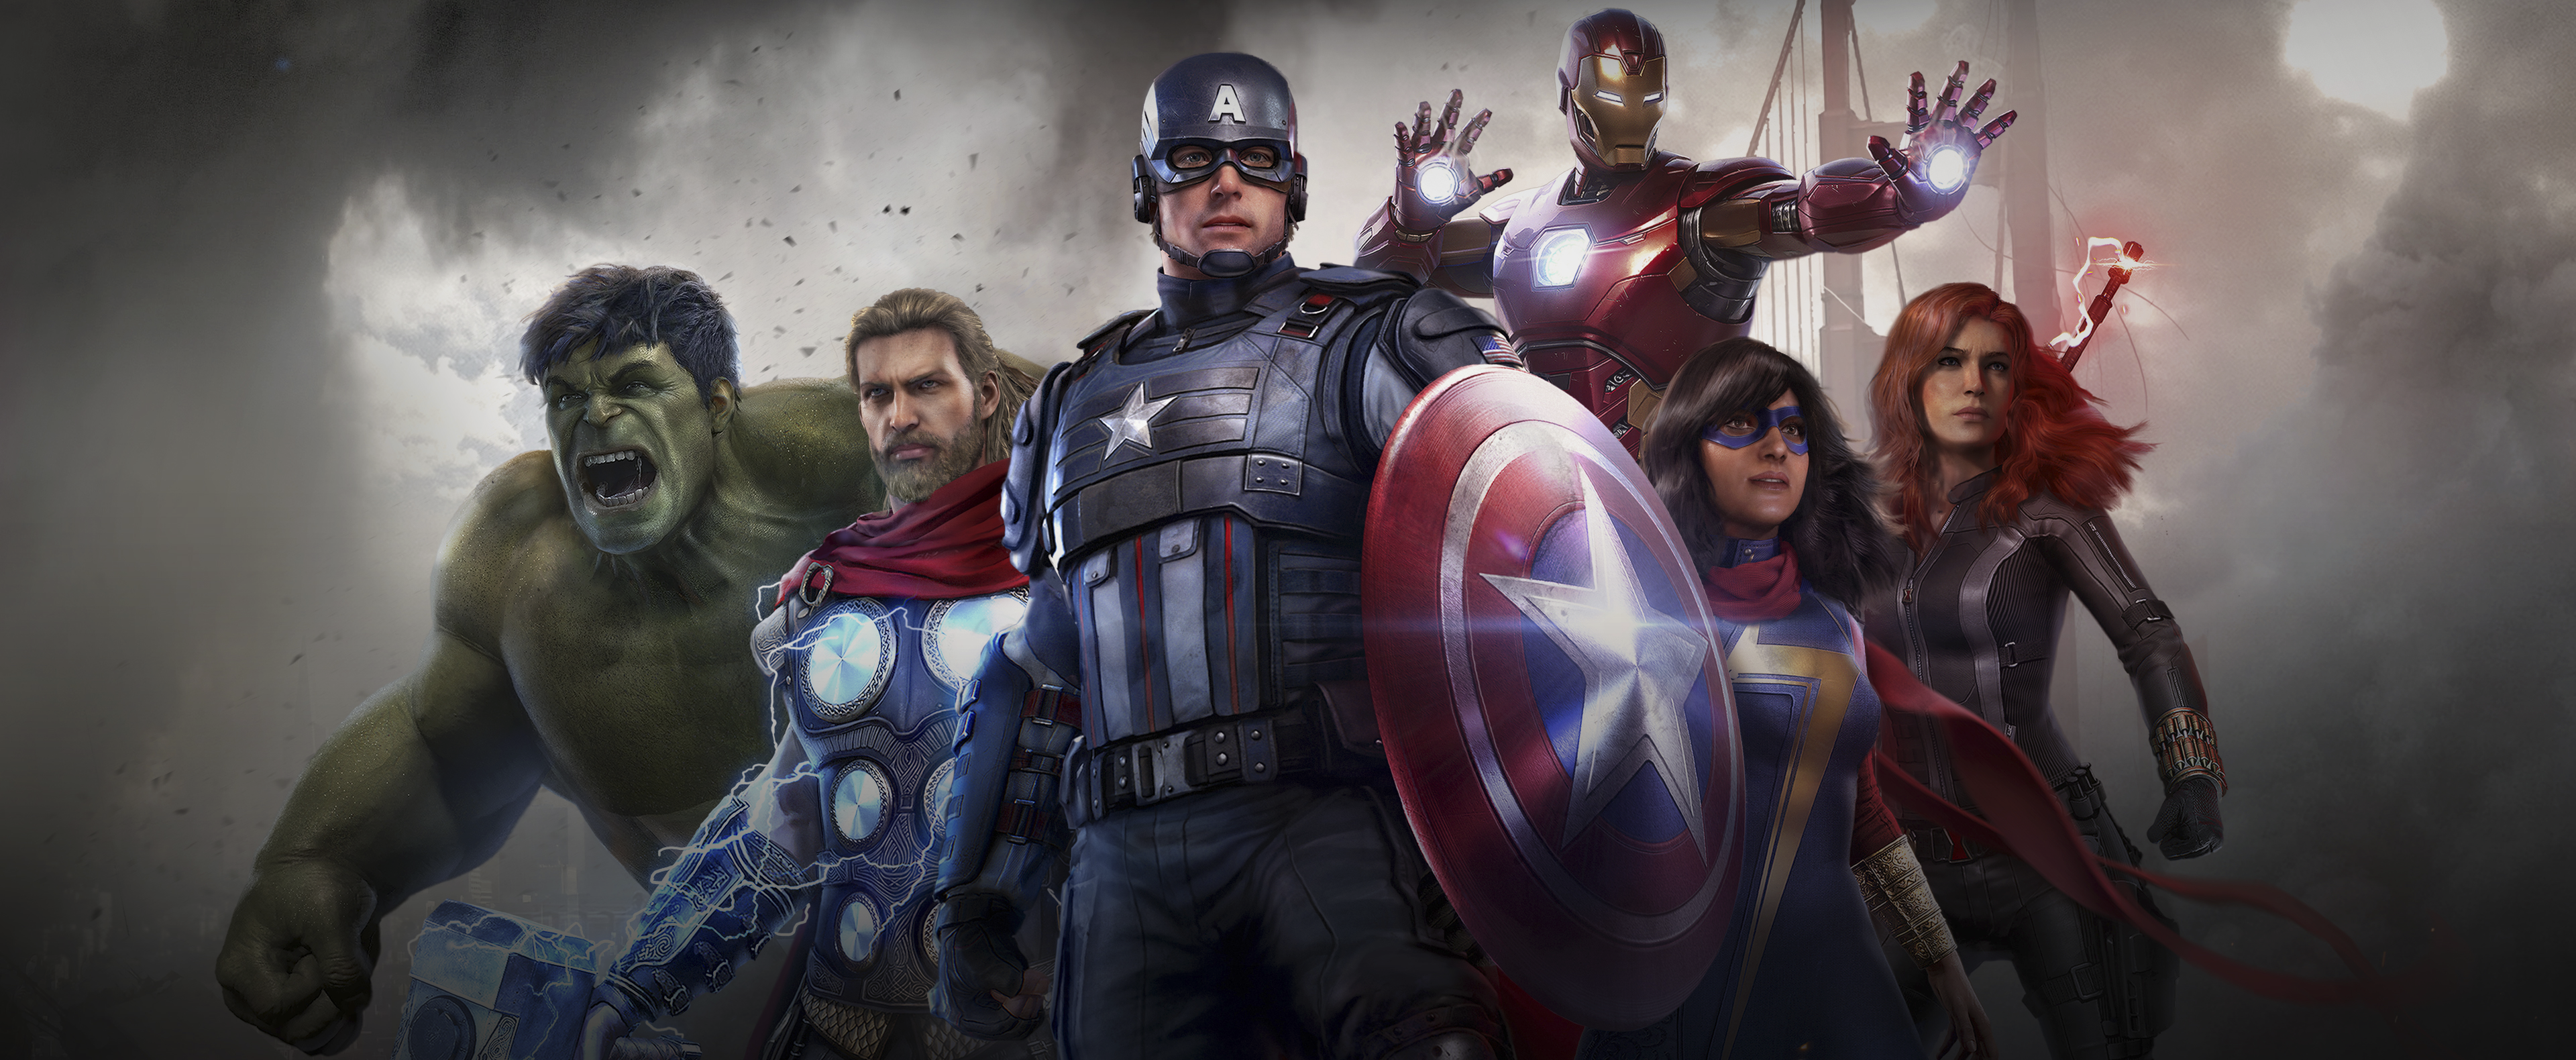 Marvel’s Avengers - الصورة الفنية الأساسية